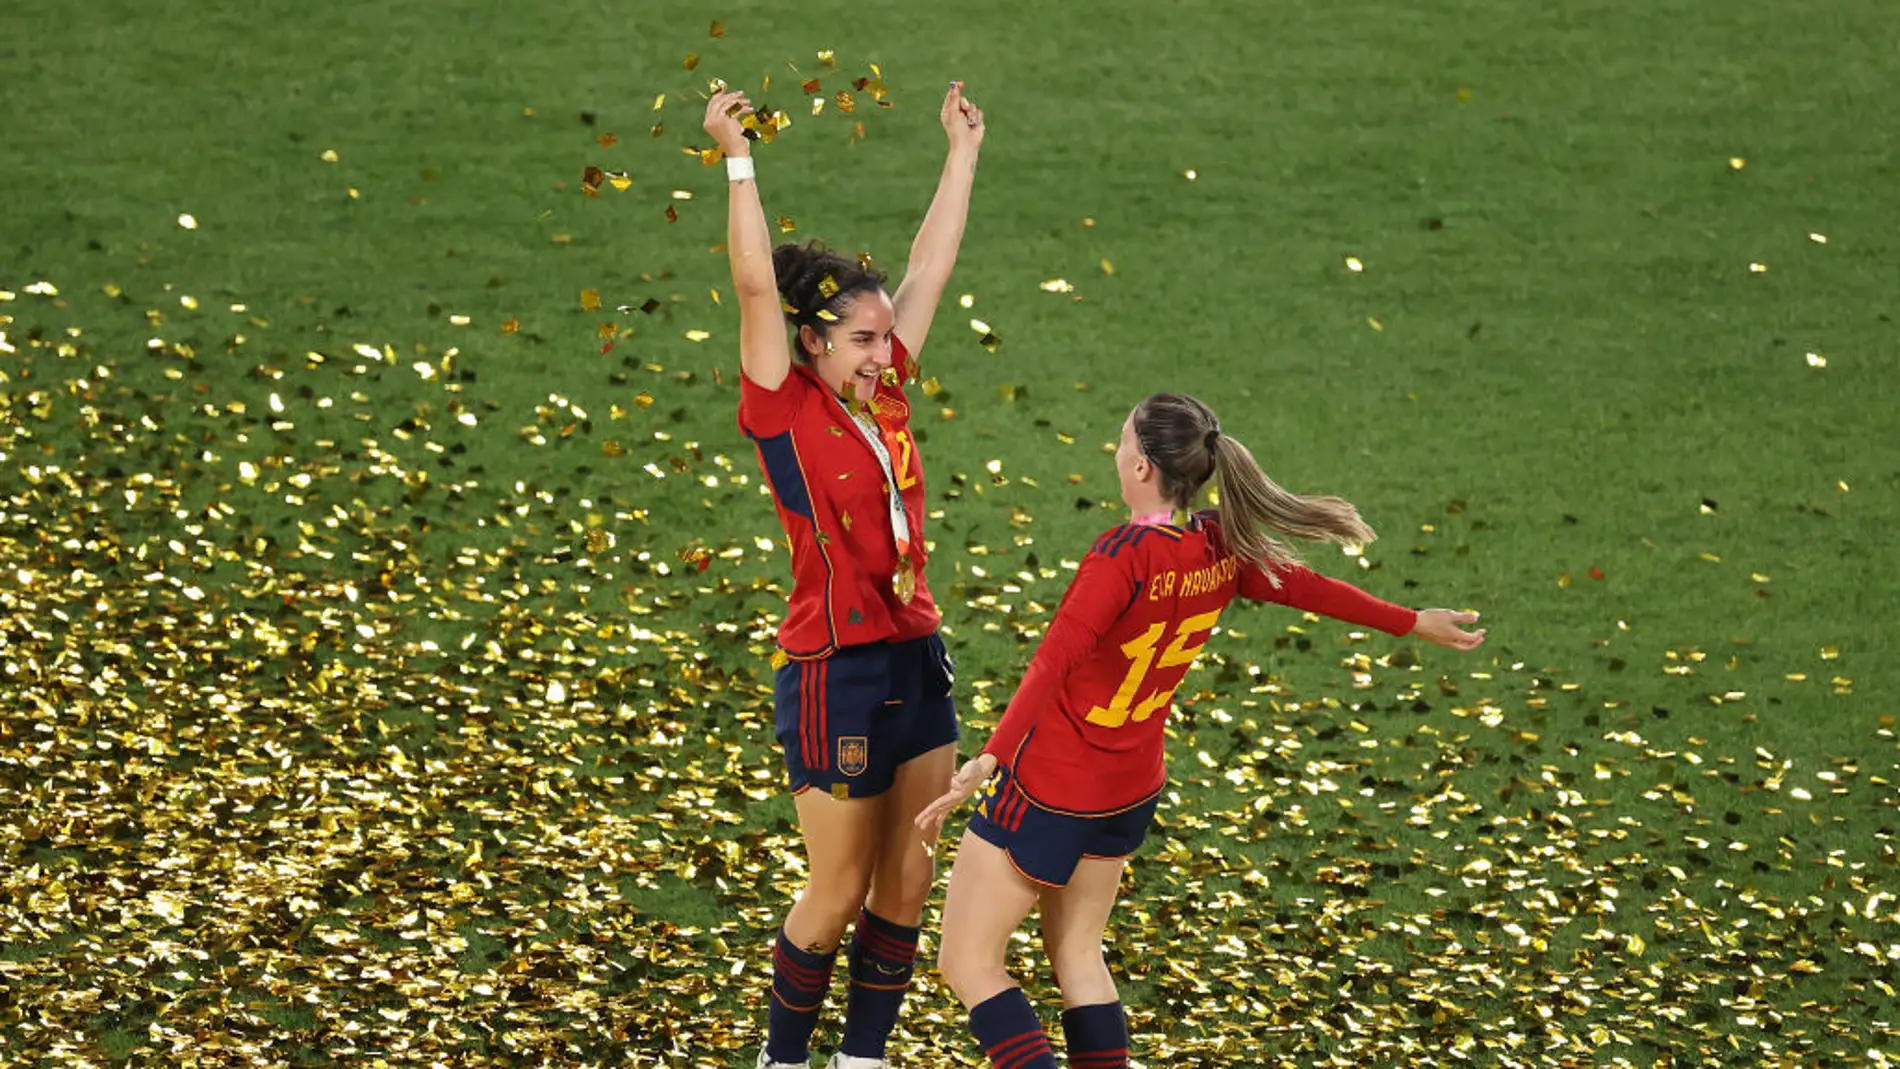 Políticos e instituciones celebran el triunfo de España en el Mundial de fútbol femenino: "Sois muy grandes"